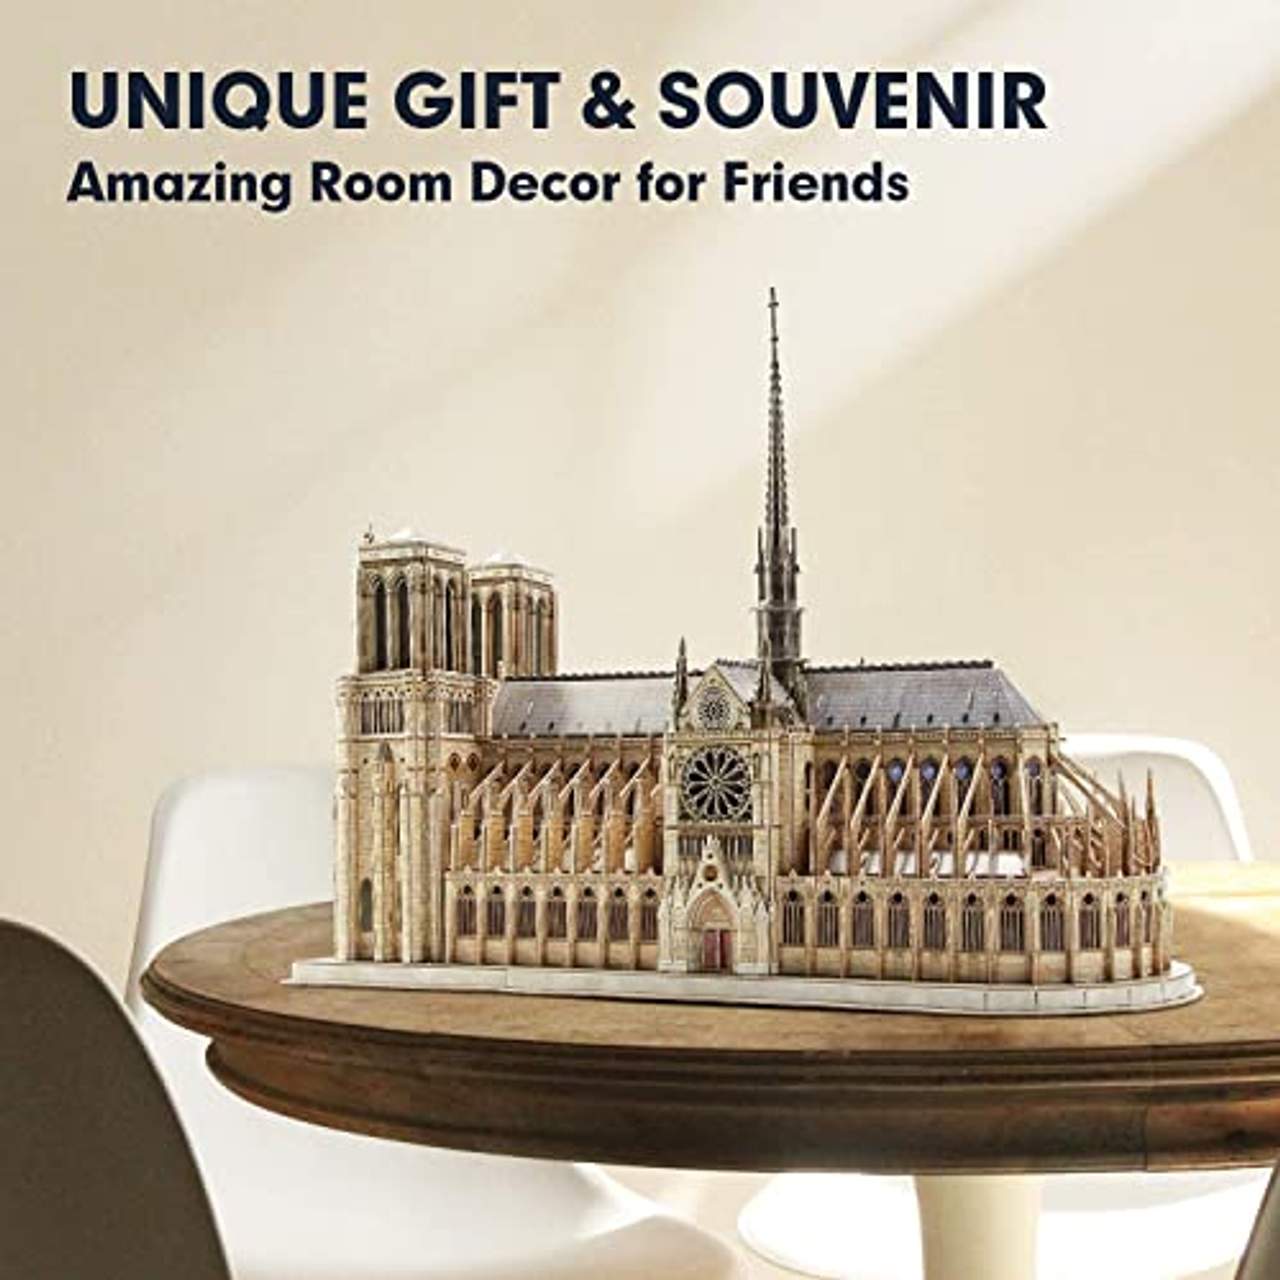 CubicFun 3D Puzzle  Notre Dame